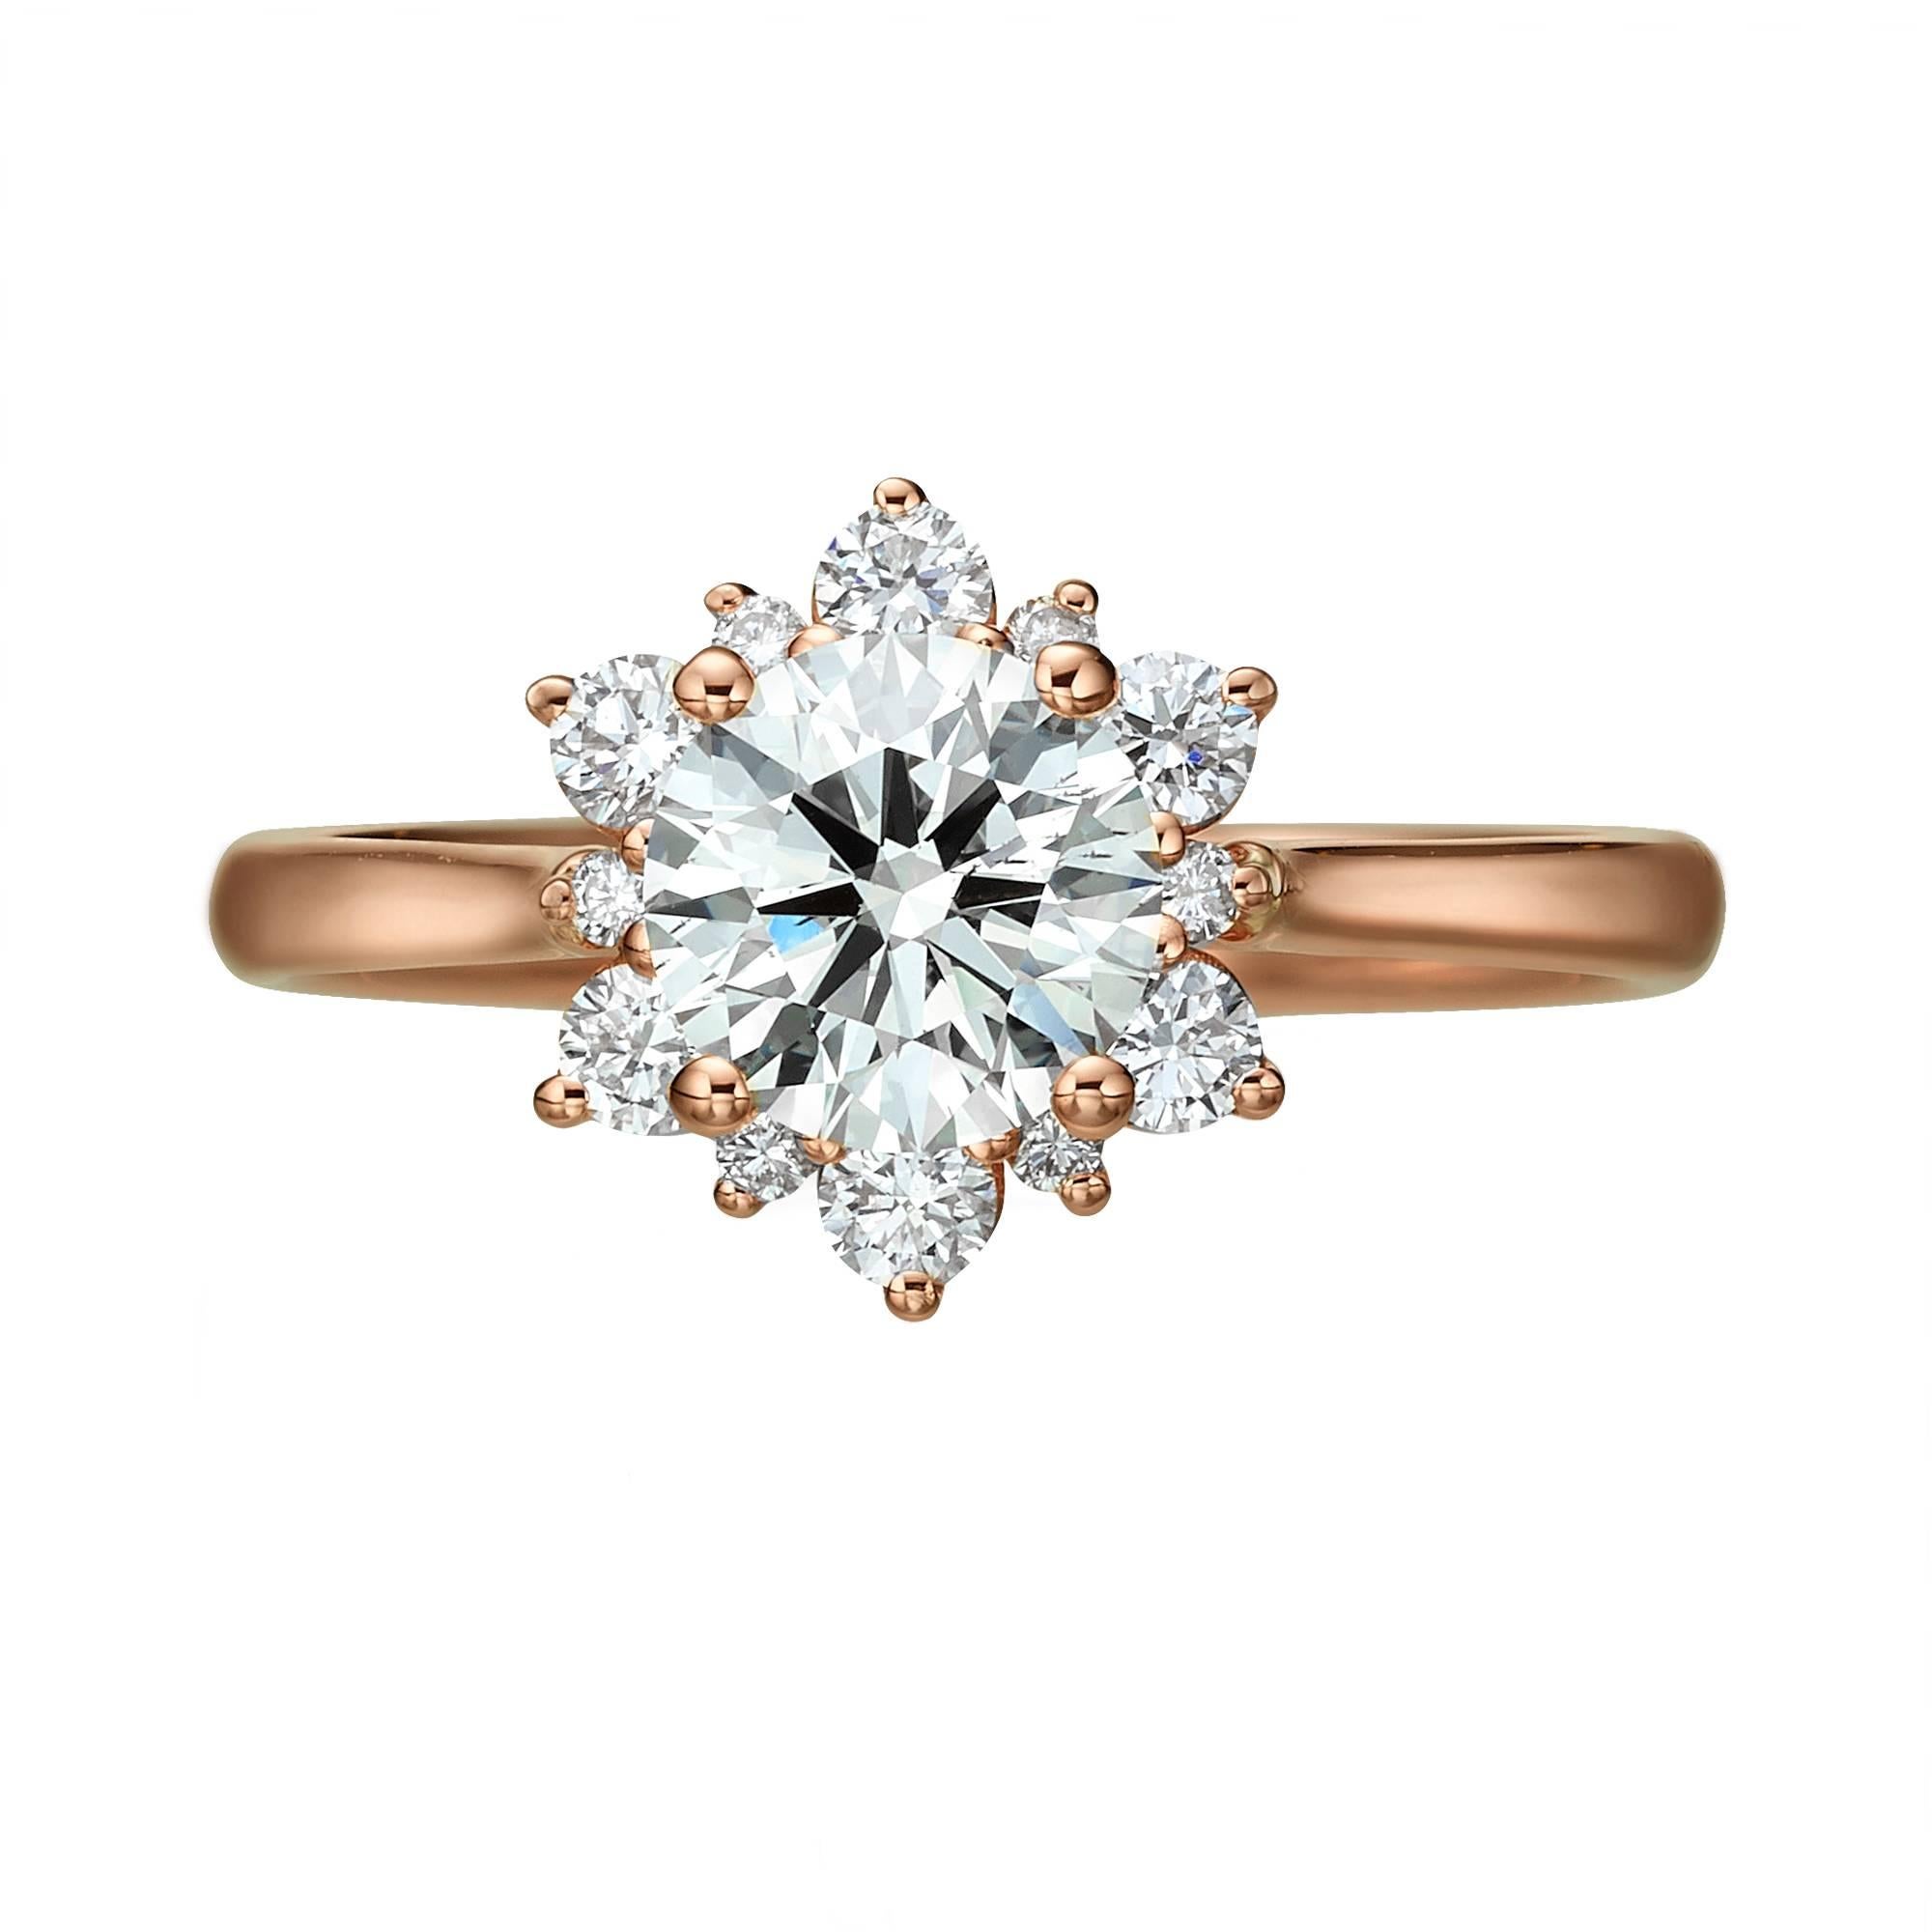 Handgefertigter GIA-zertifizierter Diamantring mit 1,00 Karat rundem Brillantschliff-Diamant mit H-Farbe und SI2-Klarheit. 
Der Diamant ist in 12 runde Brillanten von insgesamt 0,30 Karat eingefasst  Gewicht der Diamanten. Dieser klassische,